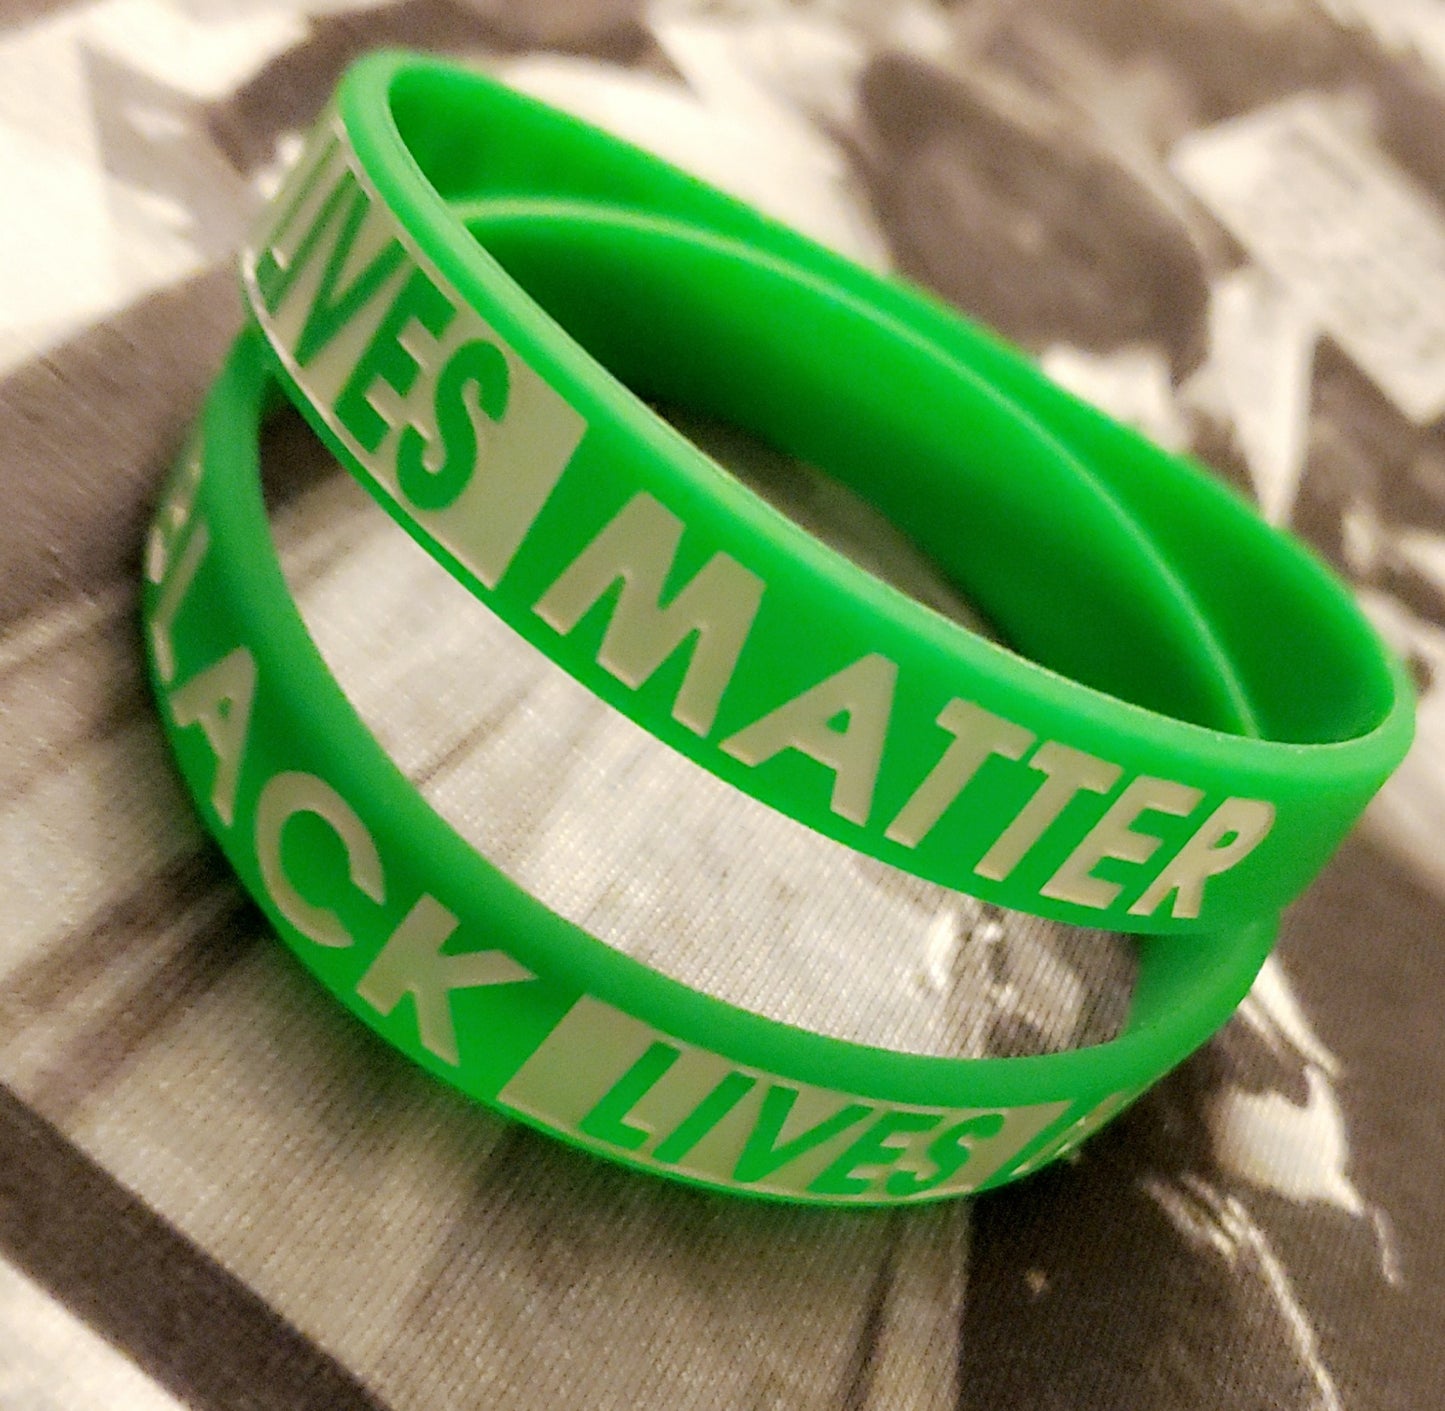 Black Lives Matter Wristbands